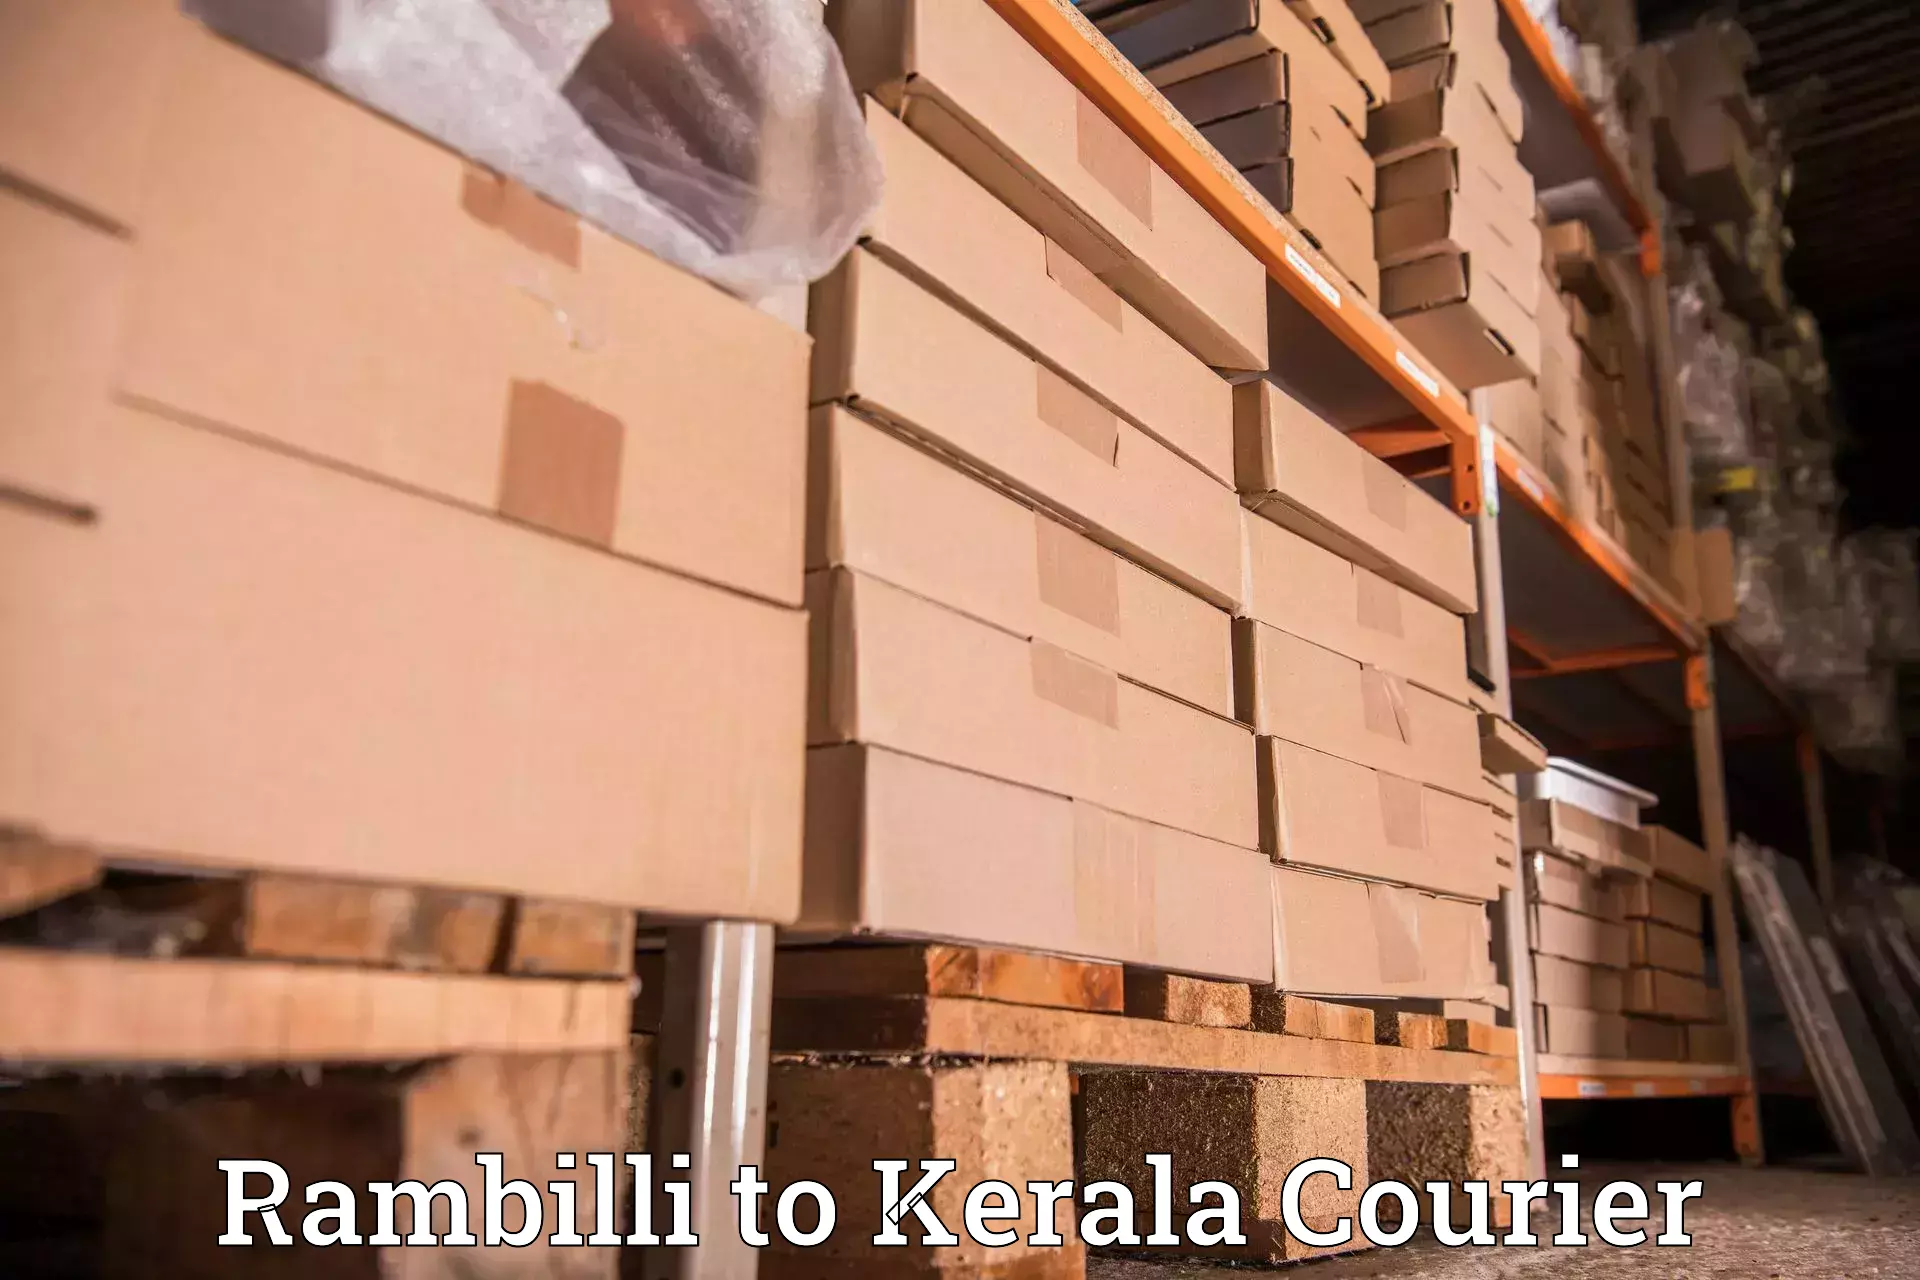 Courier service comparison Rambilli to Nedumangad